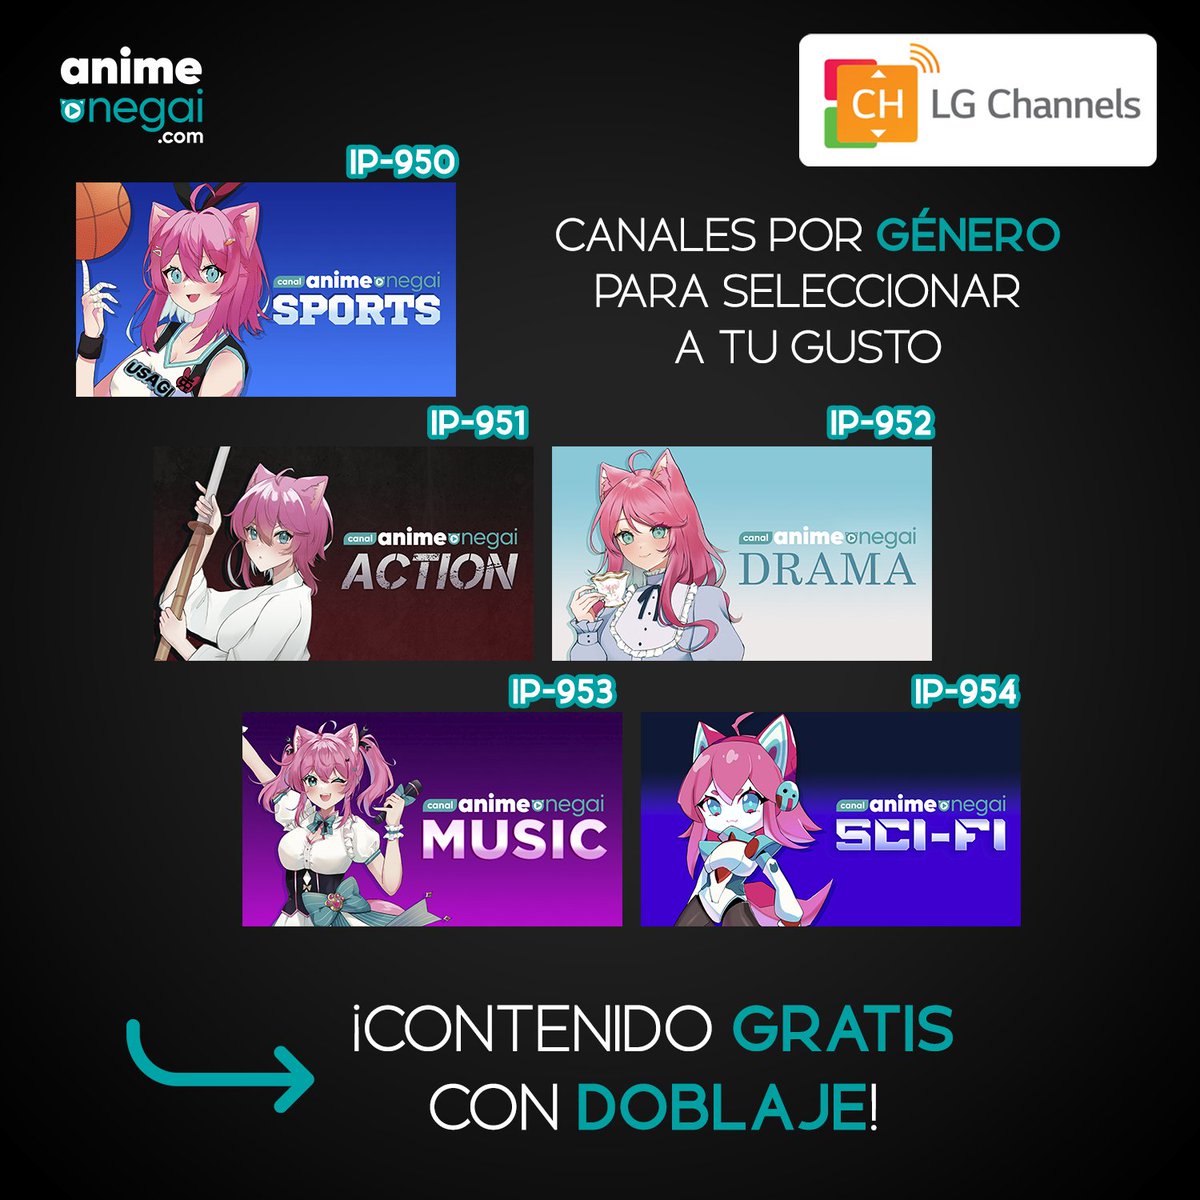 ¡Anime Onegai hace su gran debut en LG Channels! Disfruta de 5 canales únicos directamente desde tu pantalla LG.
¡Envíanos una foto cuando nos encuentres!
(Te recomendamos buscar por IP 👀) 📺✨ #AnimeOnegai #LGChannels